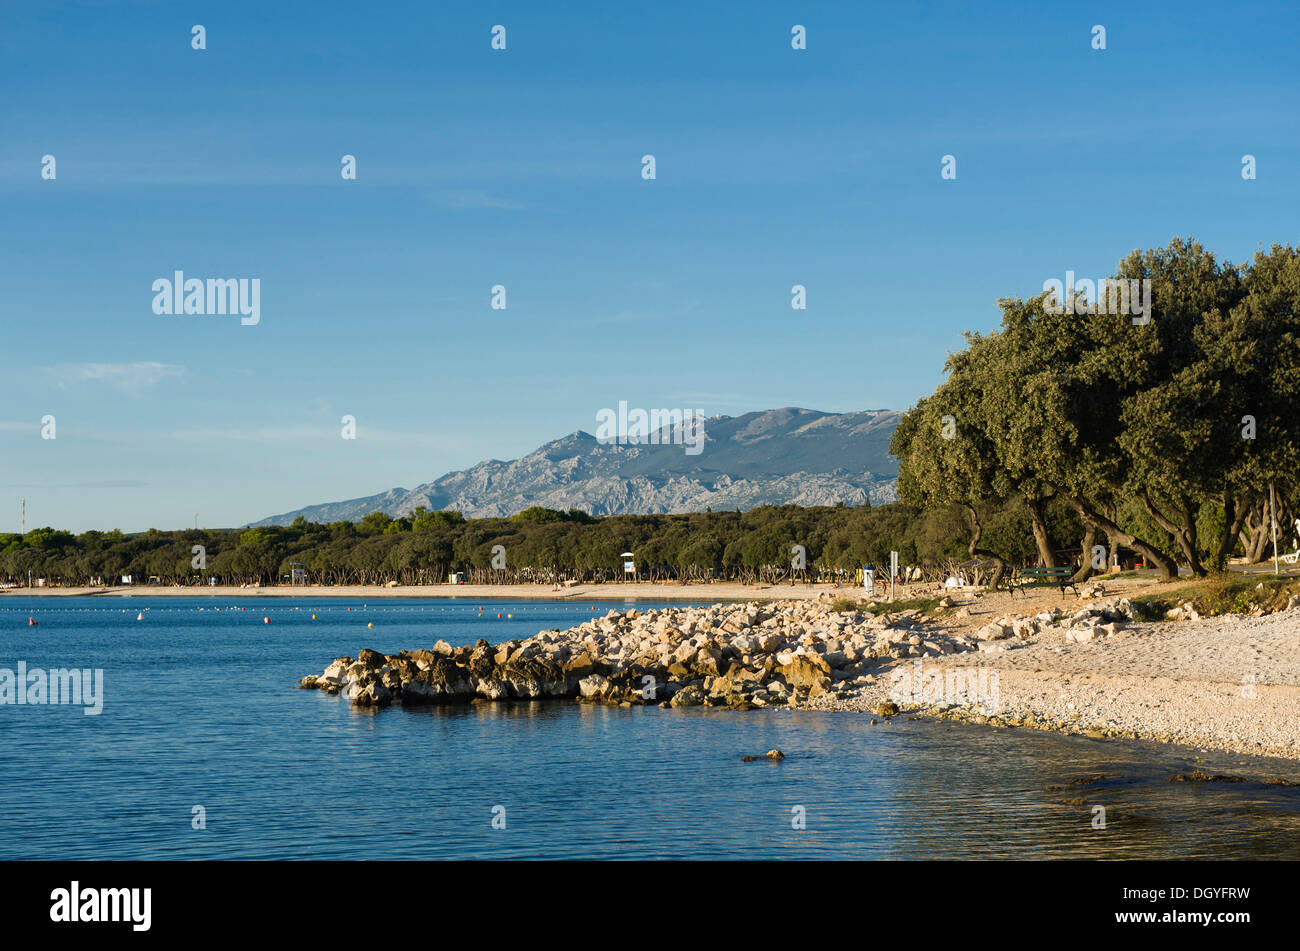 Dalmatinische Eichen (Quercus SP.) an einem Strand, Camping in Novalja, Insel Pag, Adriatisches Meer, Golf von Kvarner, Kroatien, Europa Stockfoto